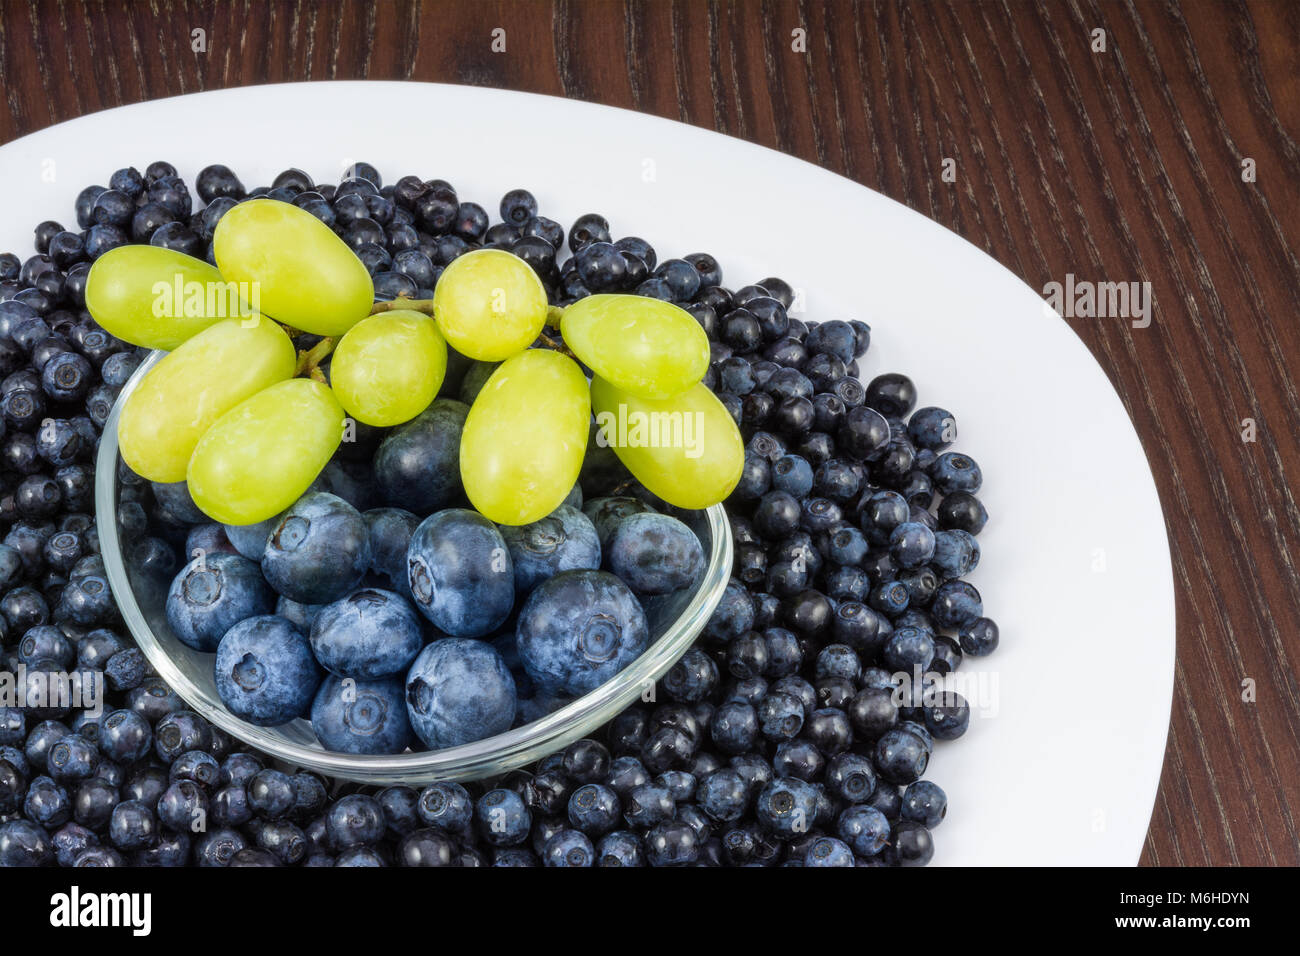 Les bleuets et grappe de raisins sur table. Vaccinium myrtillus. Close-up de plaque blanche avec des baies et bol en verre sur fond de bois. Banque D'Images